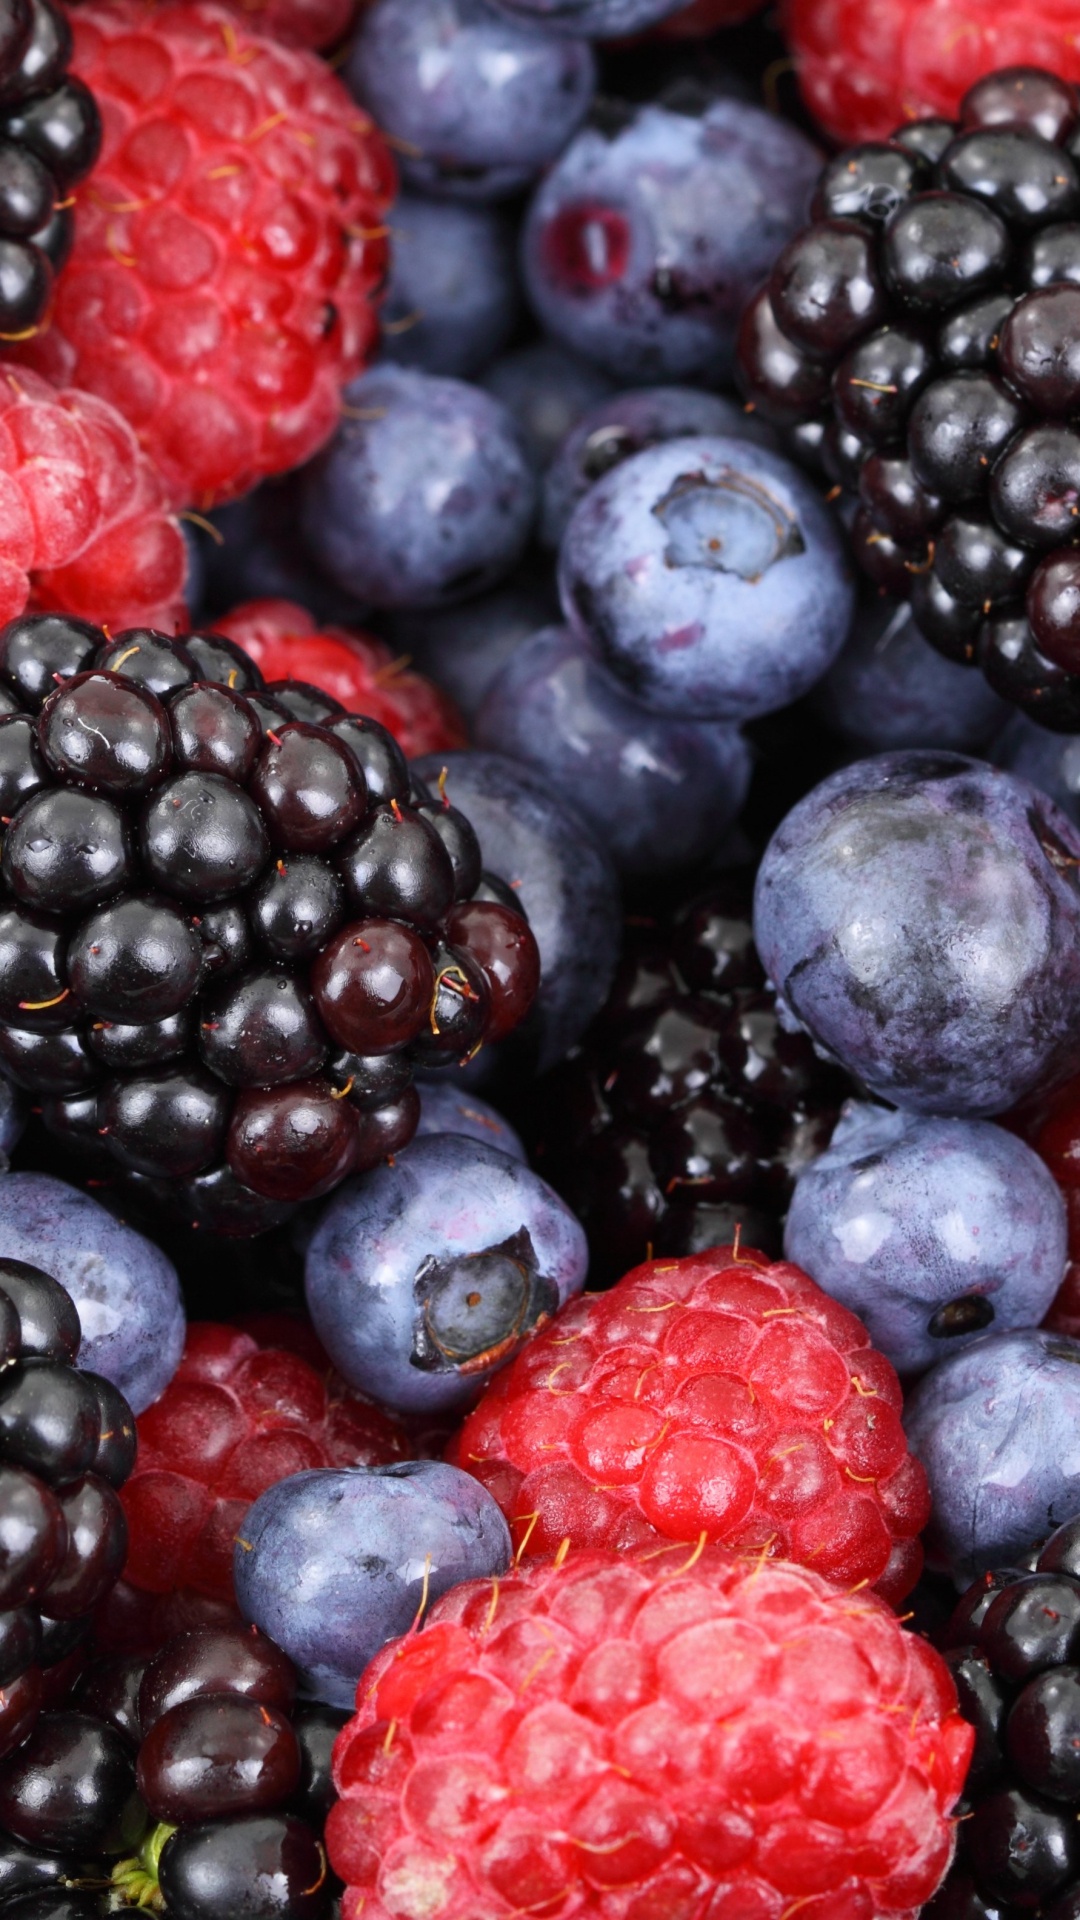 树莓, 天然的食物, 食品, 浆果, 杂货店 壁纸 1080x1920 允许